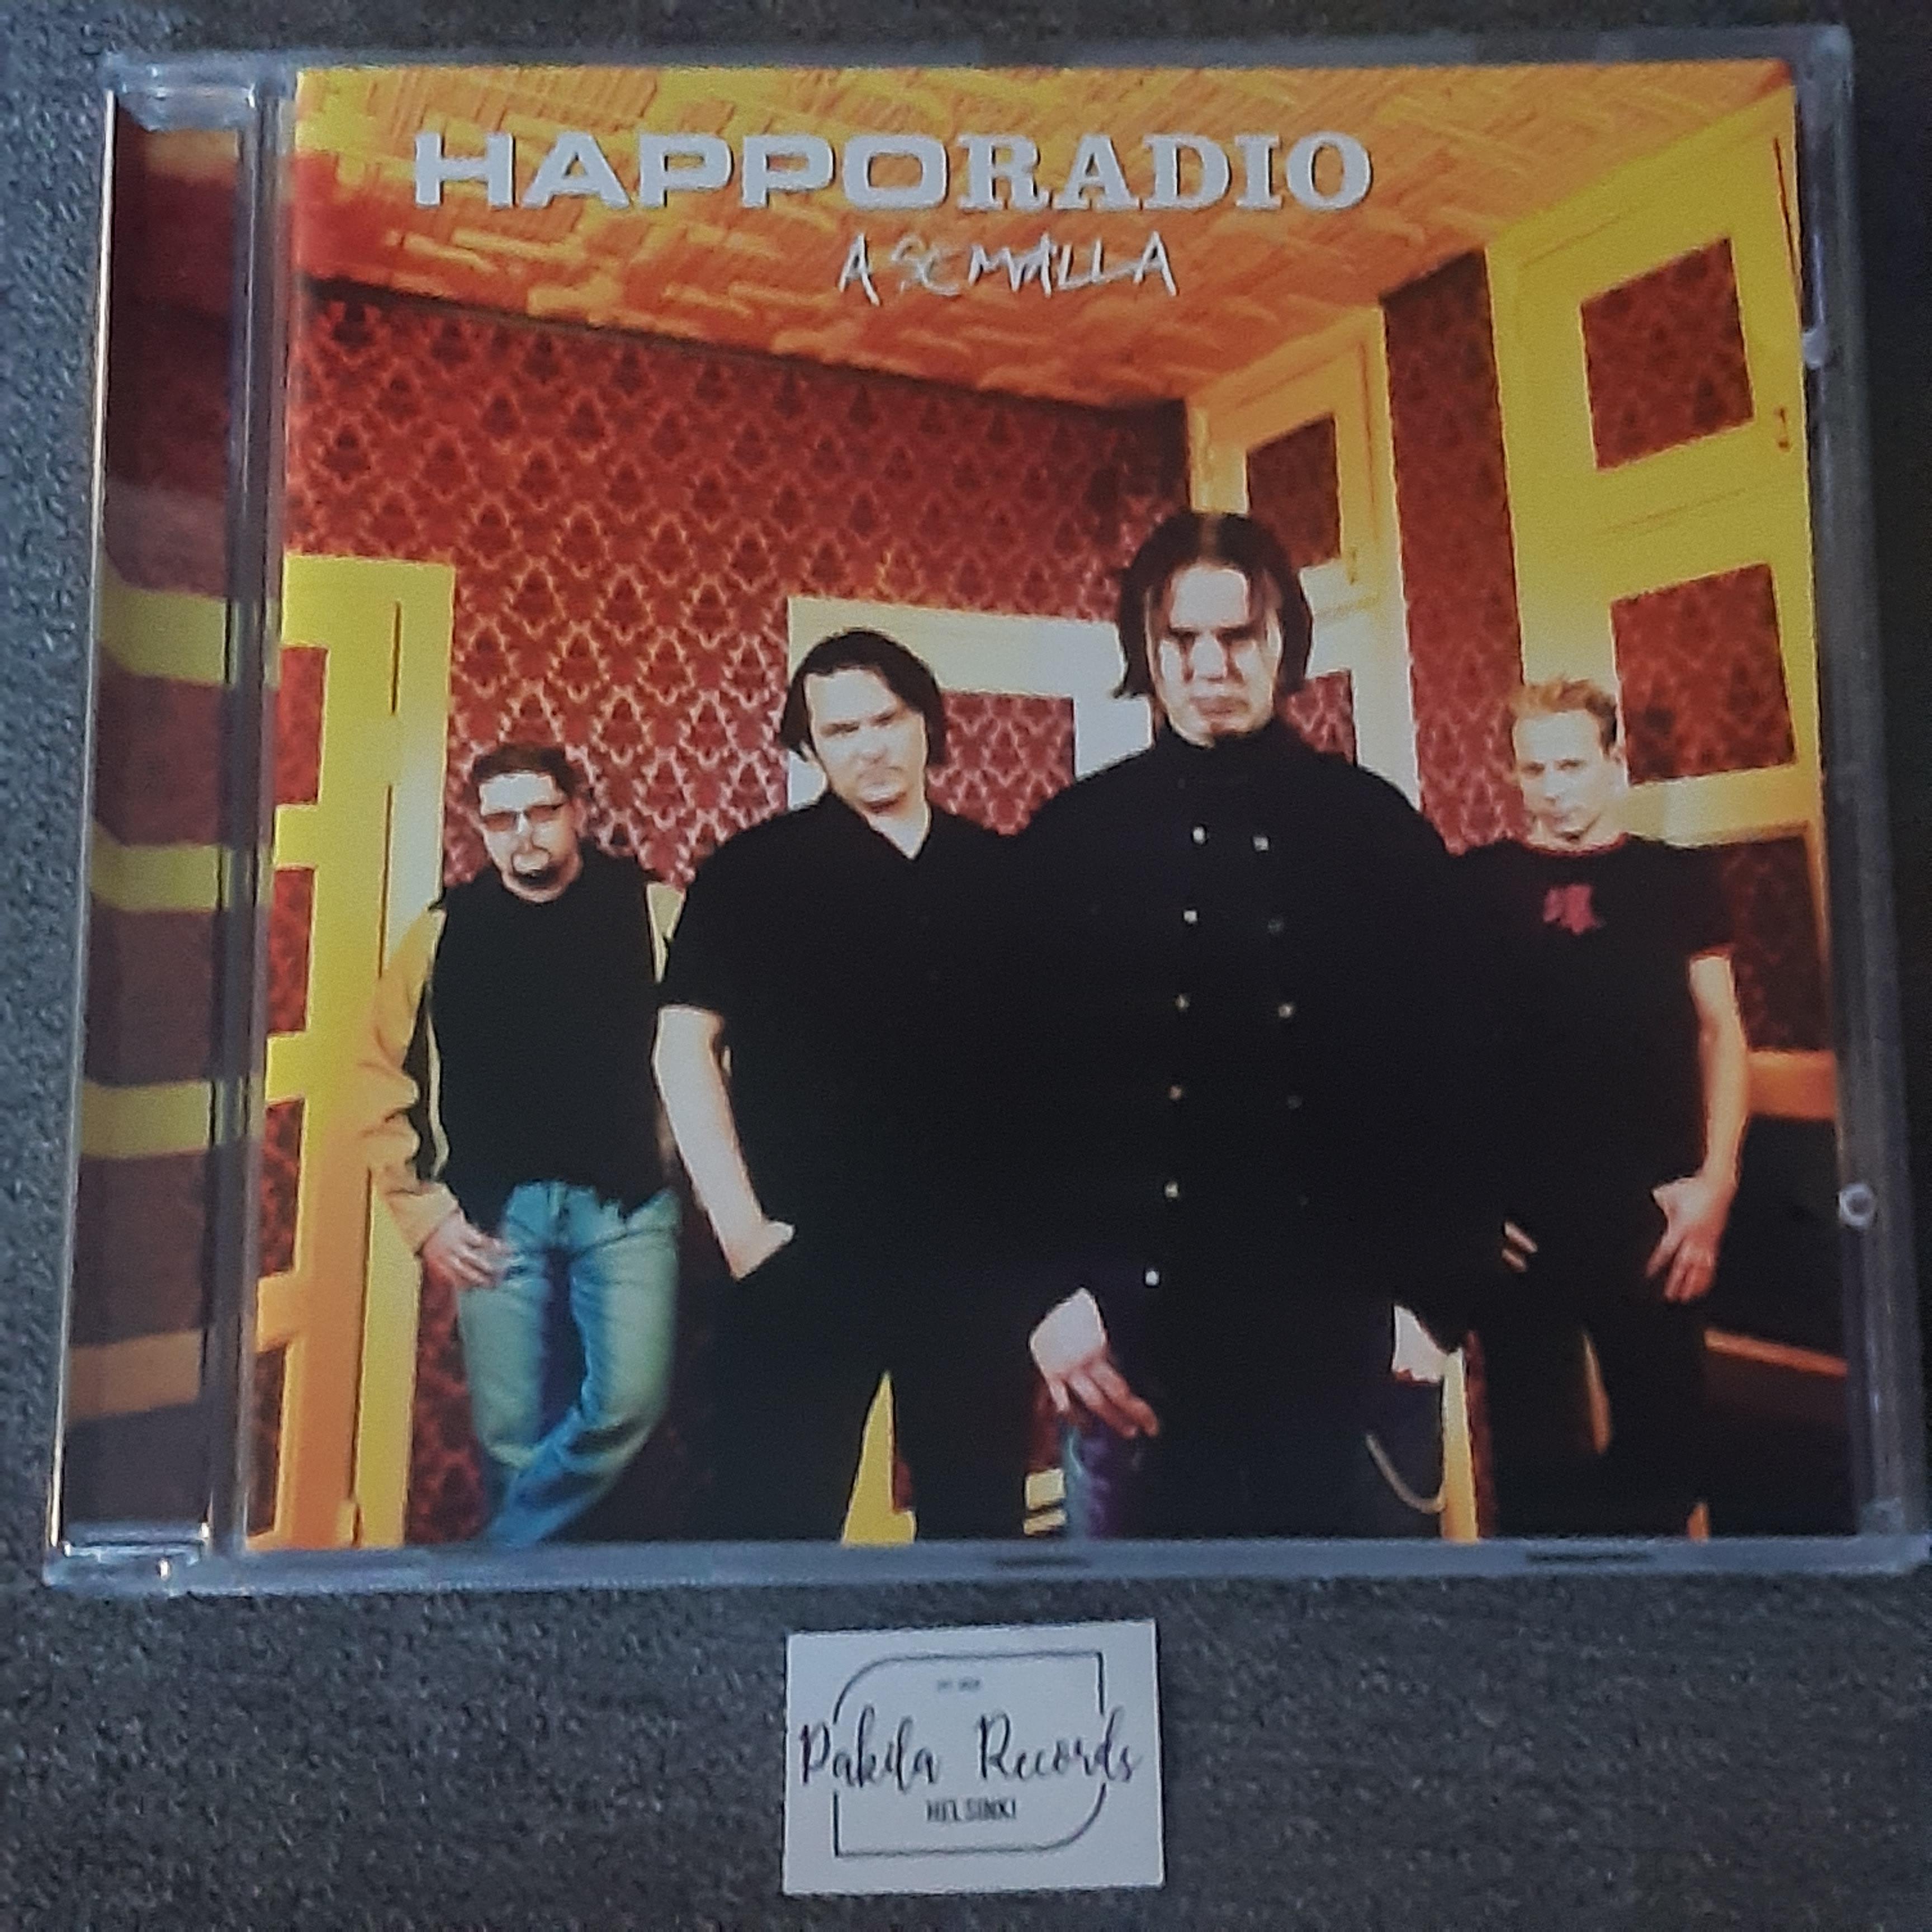 Happoradio - Asemalla - CD (käytetty)